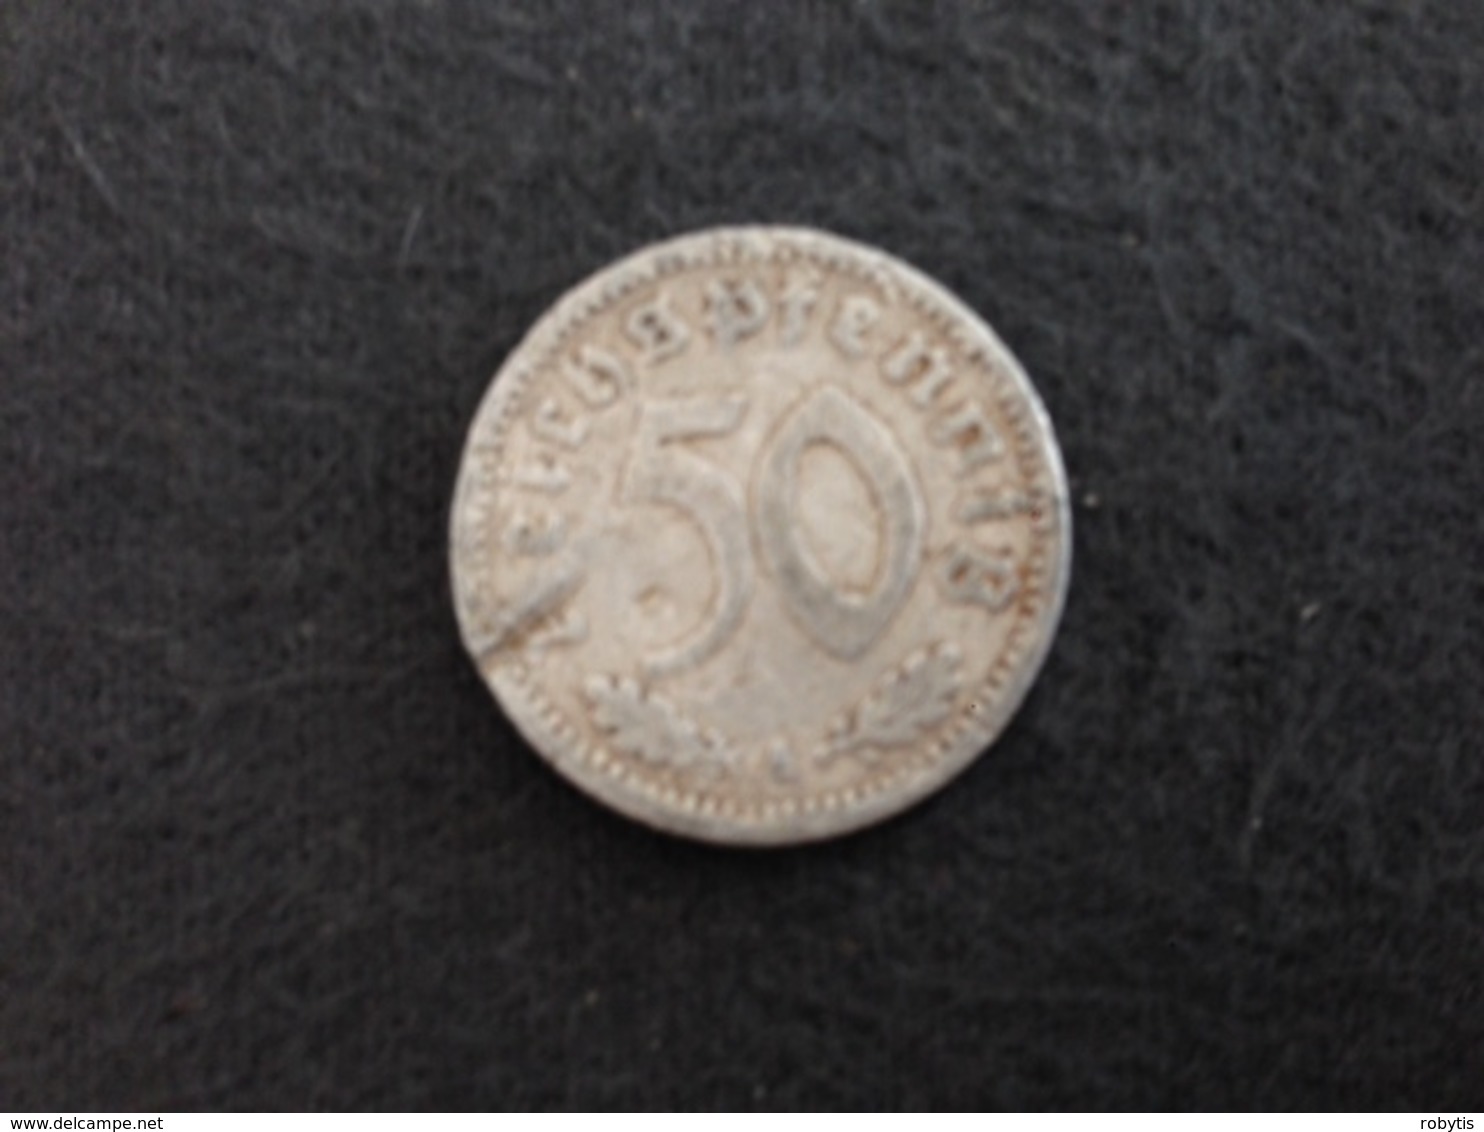 50 Reichspfennig 1940 A - Germany - 50 Reichspfennig